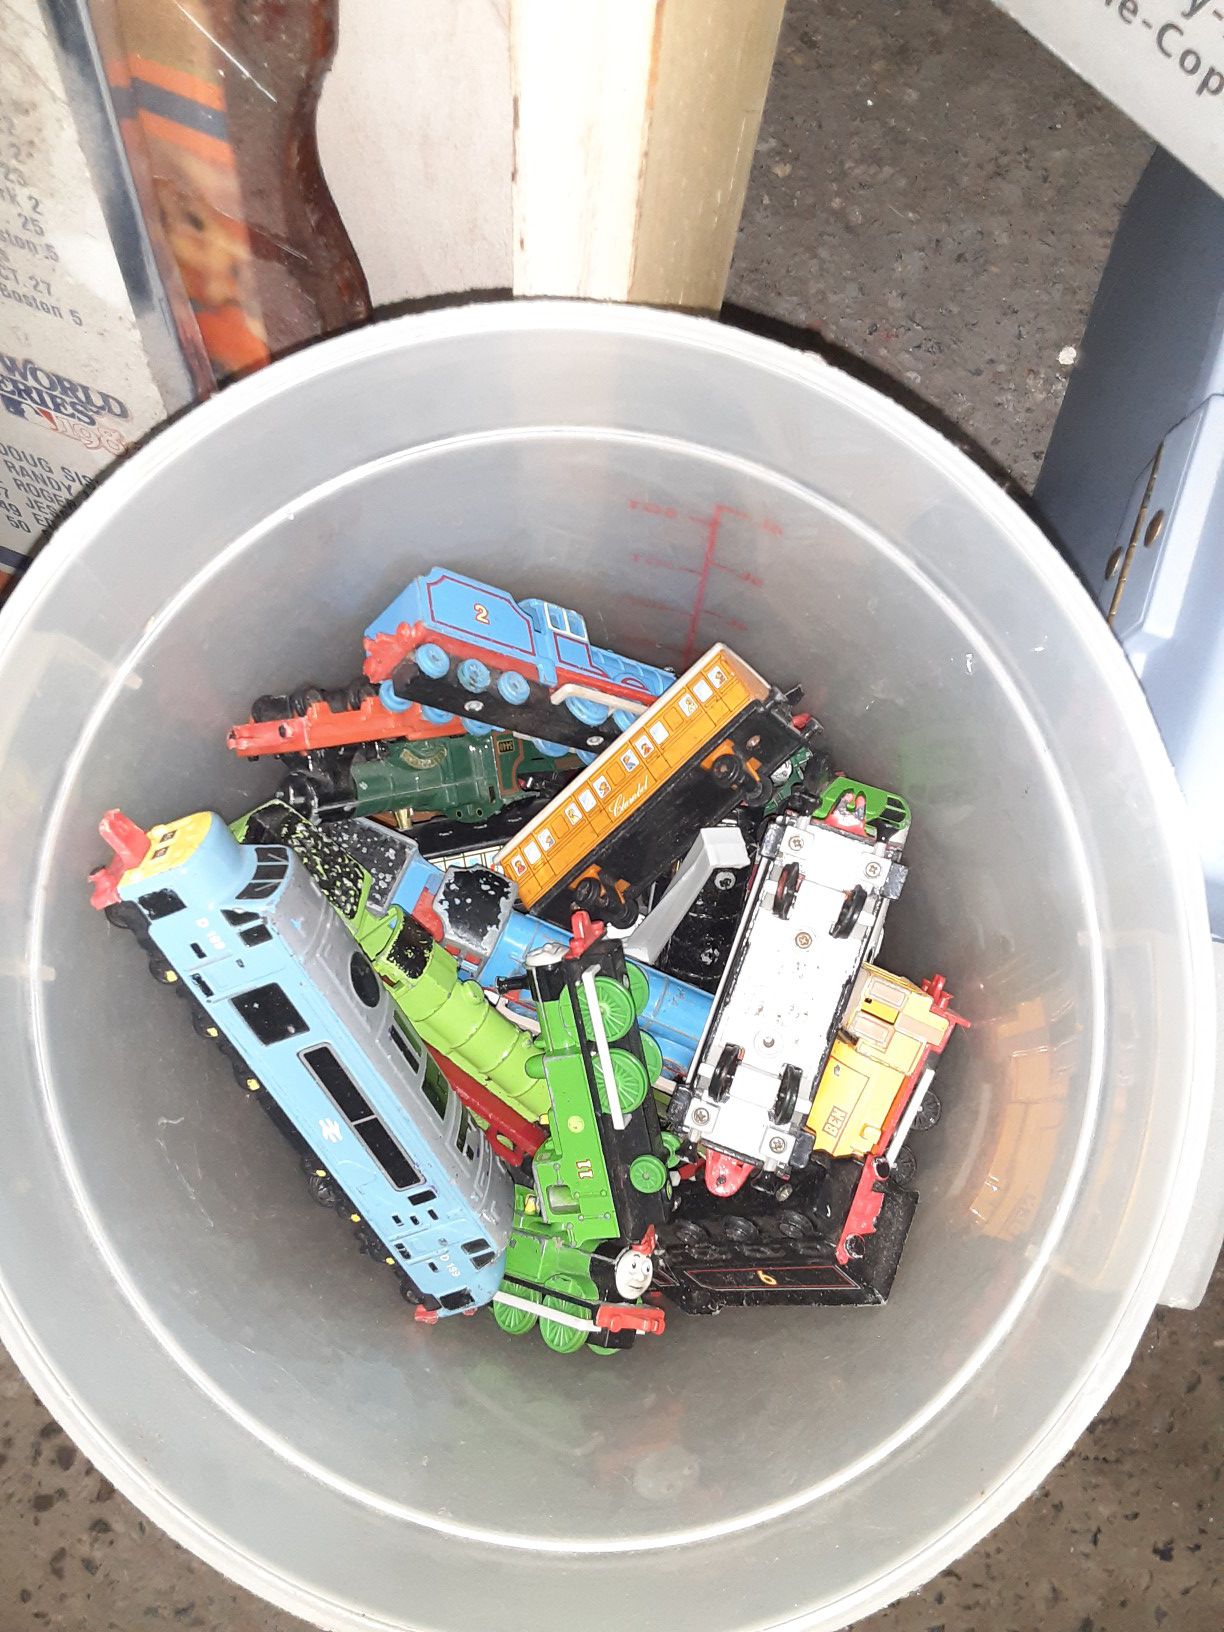 Thomas the Train Toys